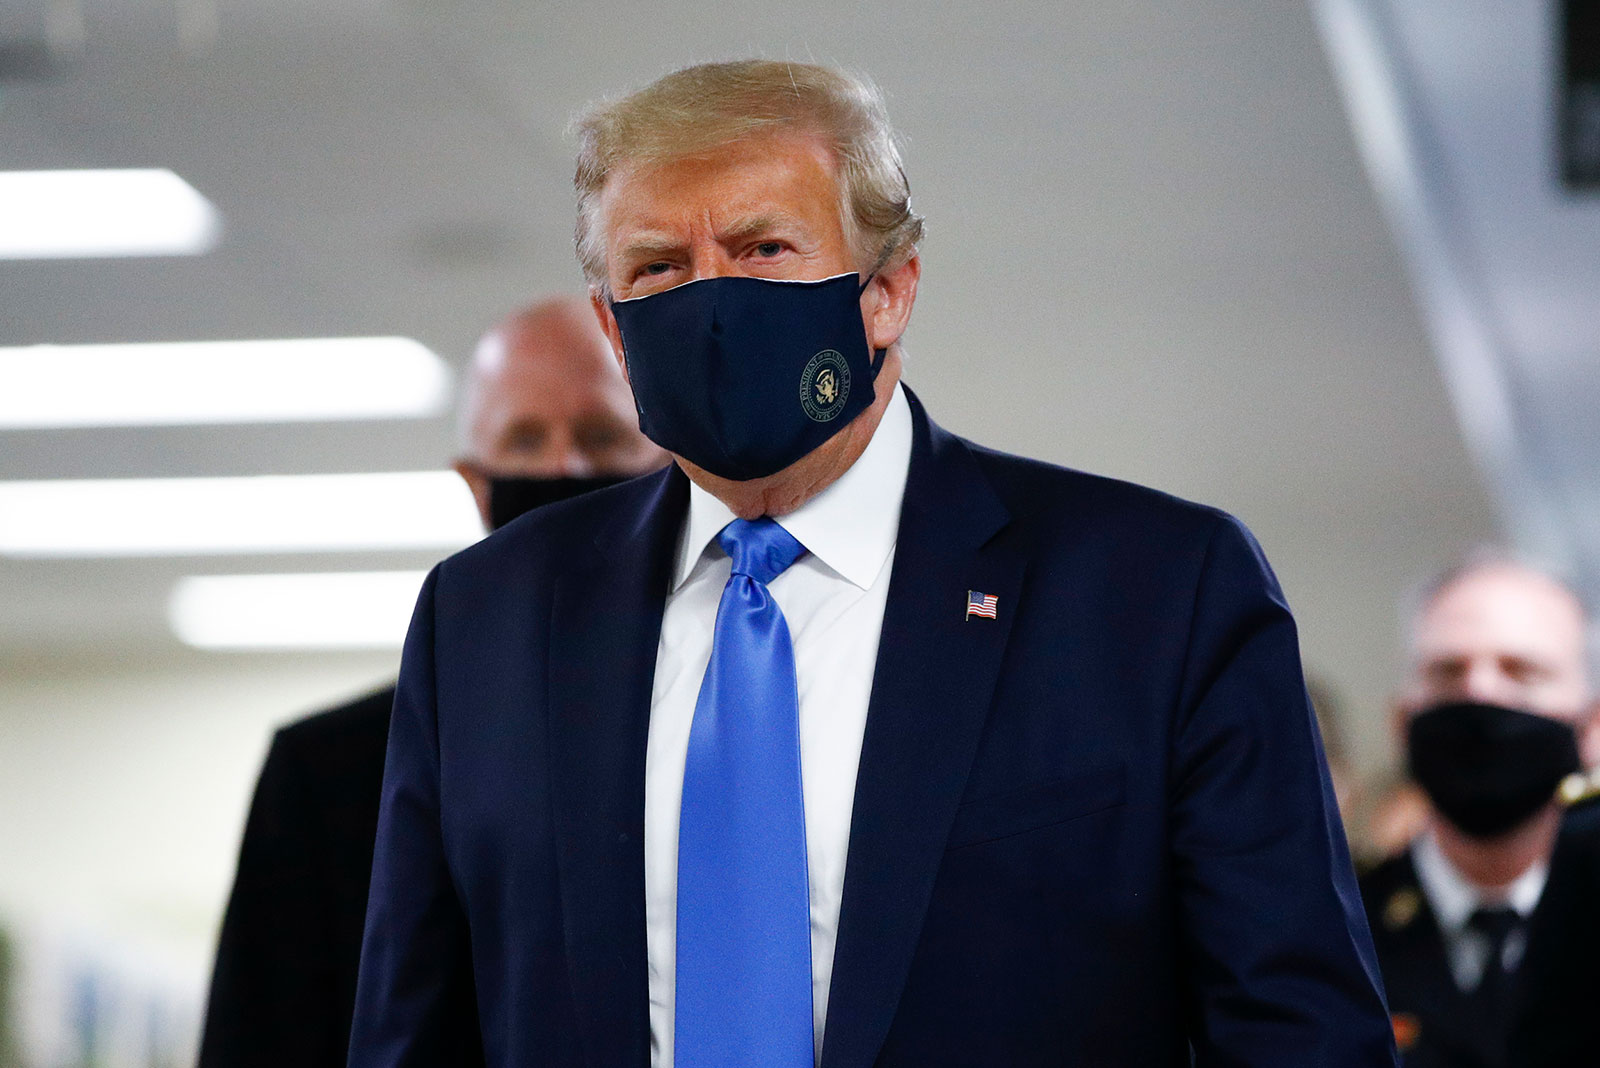   Tin tức y tế thế giới ngày 12/7: Tổng thống Donald Trump đeo khẩu trang  